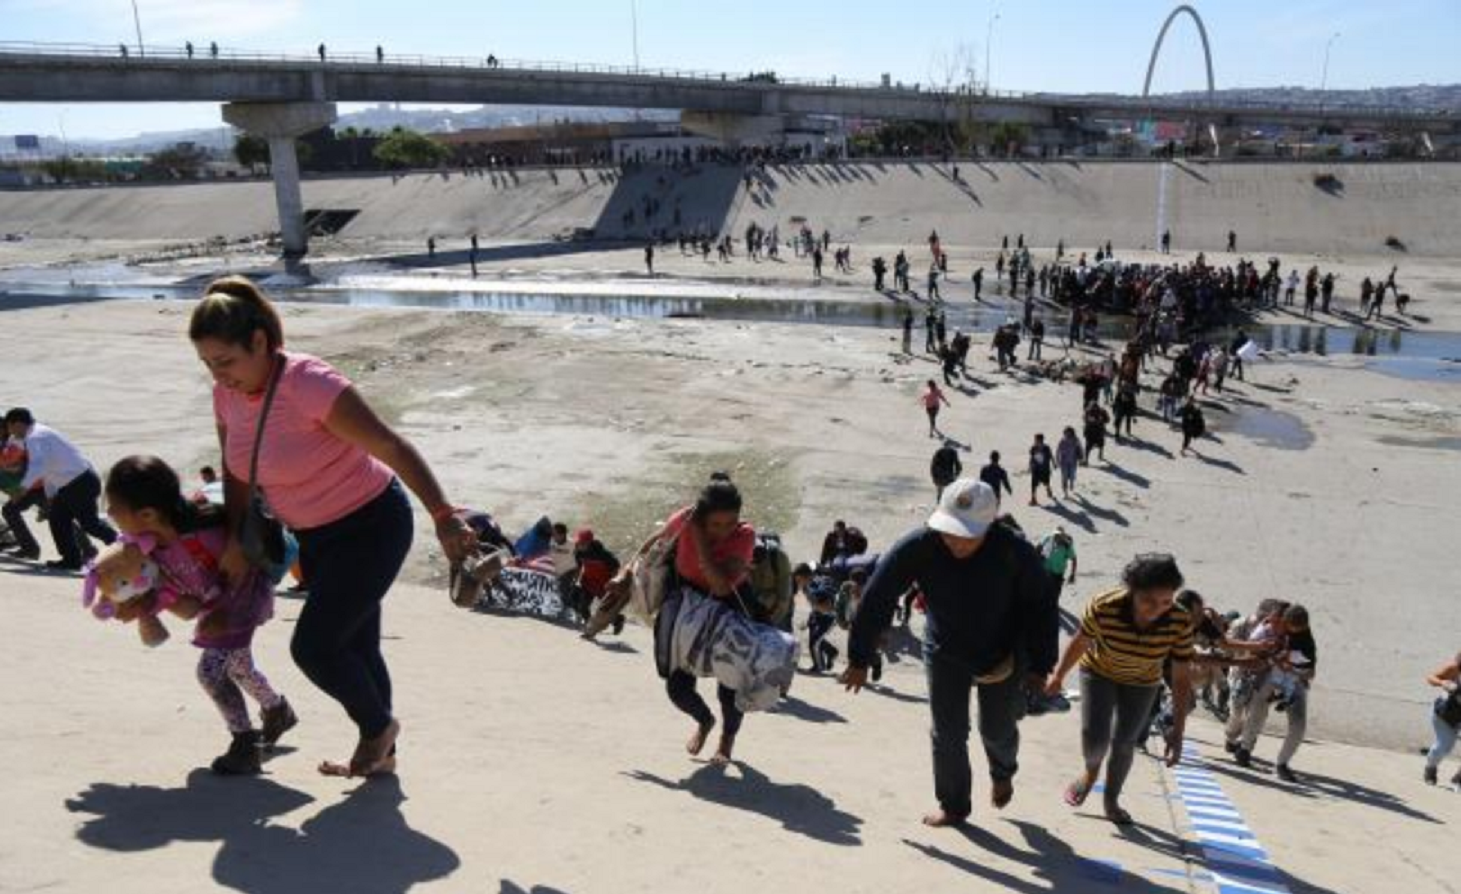 Ayer, cerca de 500 centroamericanos intentaron cruzar la frontera con EU, en donde fueron repelidos con gases lacrim&oacute;genos y balas de goma